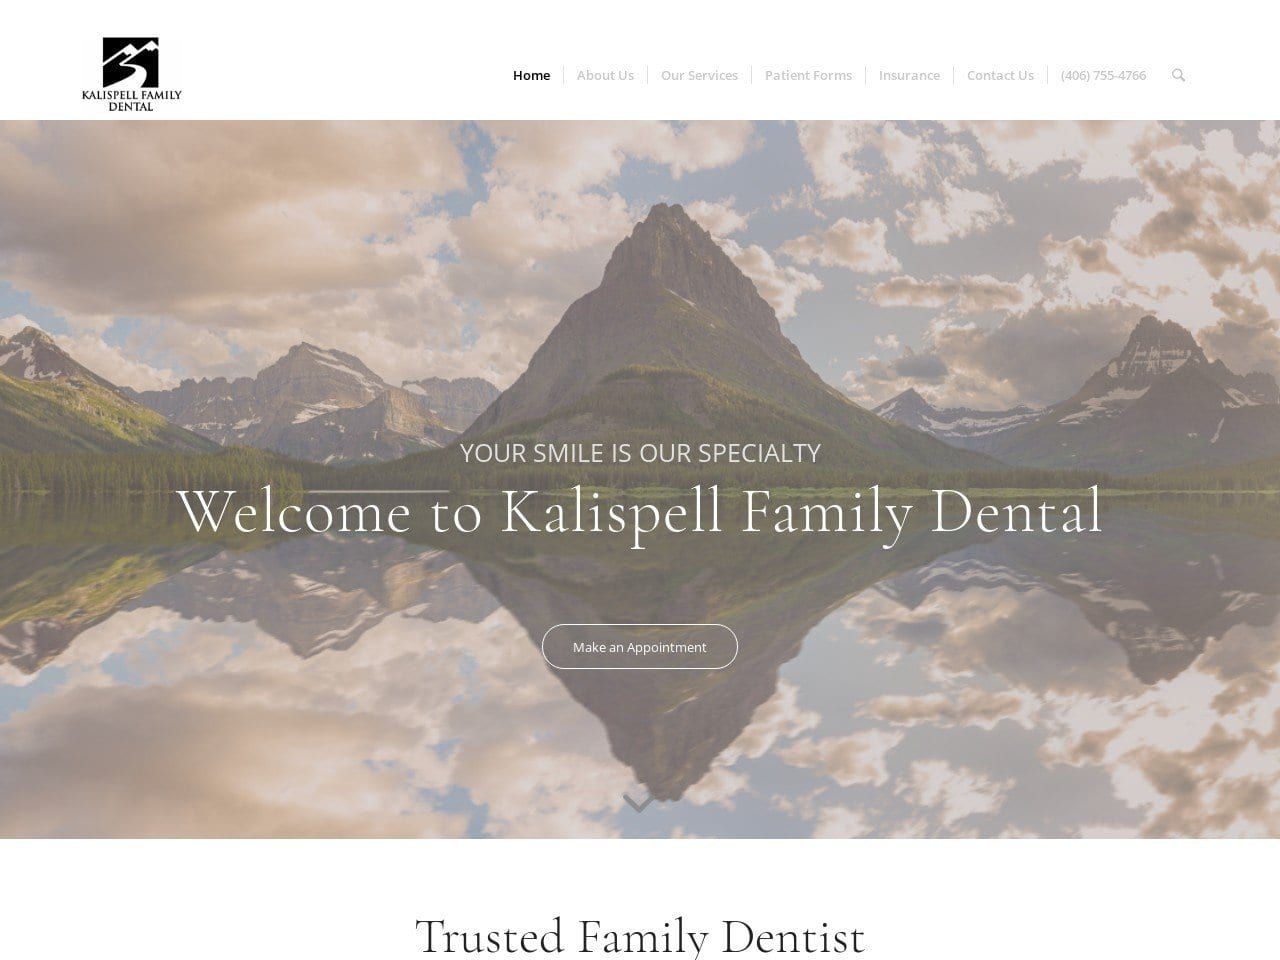 Kalispell Family Dental Website Screenshot from kalispellfamilydental.com